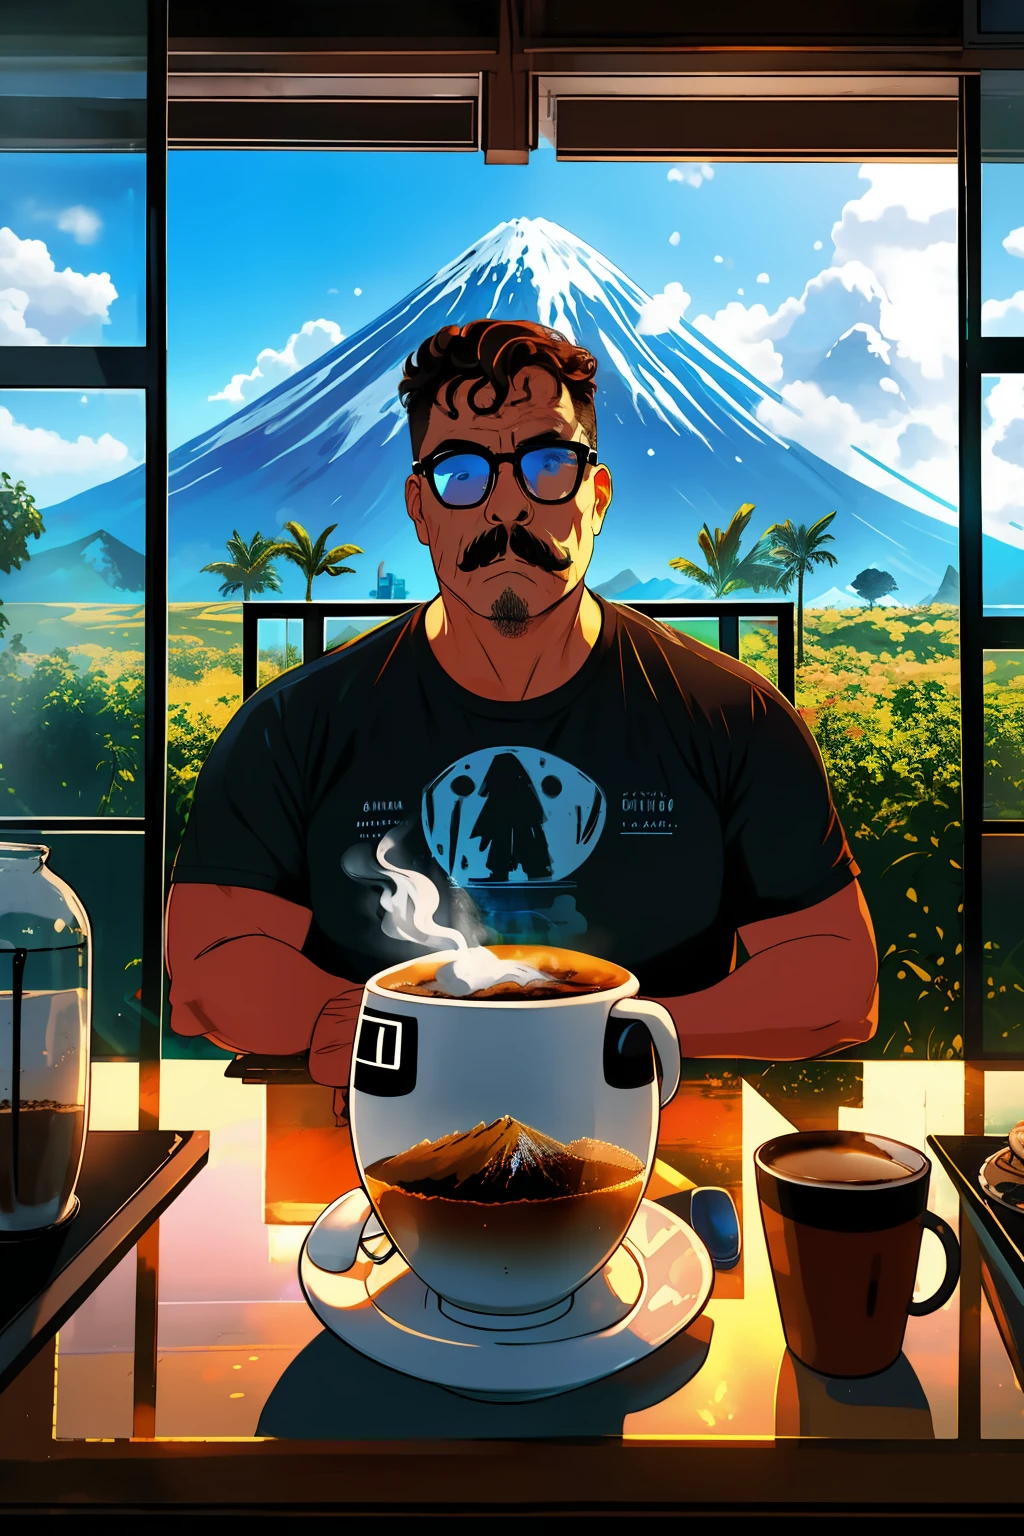 portrait réaliste d&#39;un homme avec des lunettes, une barbe et une moustache, visage défini et détaillé, avec une tasse de café dans les mains. Il est assis dans un charmant café. Par la fenêtre, vous pouvez voir un volcan en éruption avec de la lave et du feu.. Dîner imaginatif et réaliste. Détaillé et sensationnel. 8k. UHD